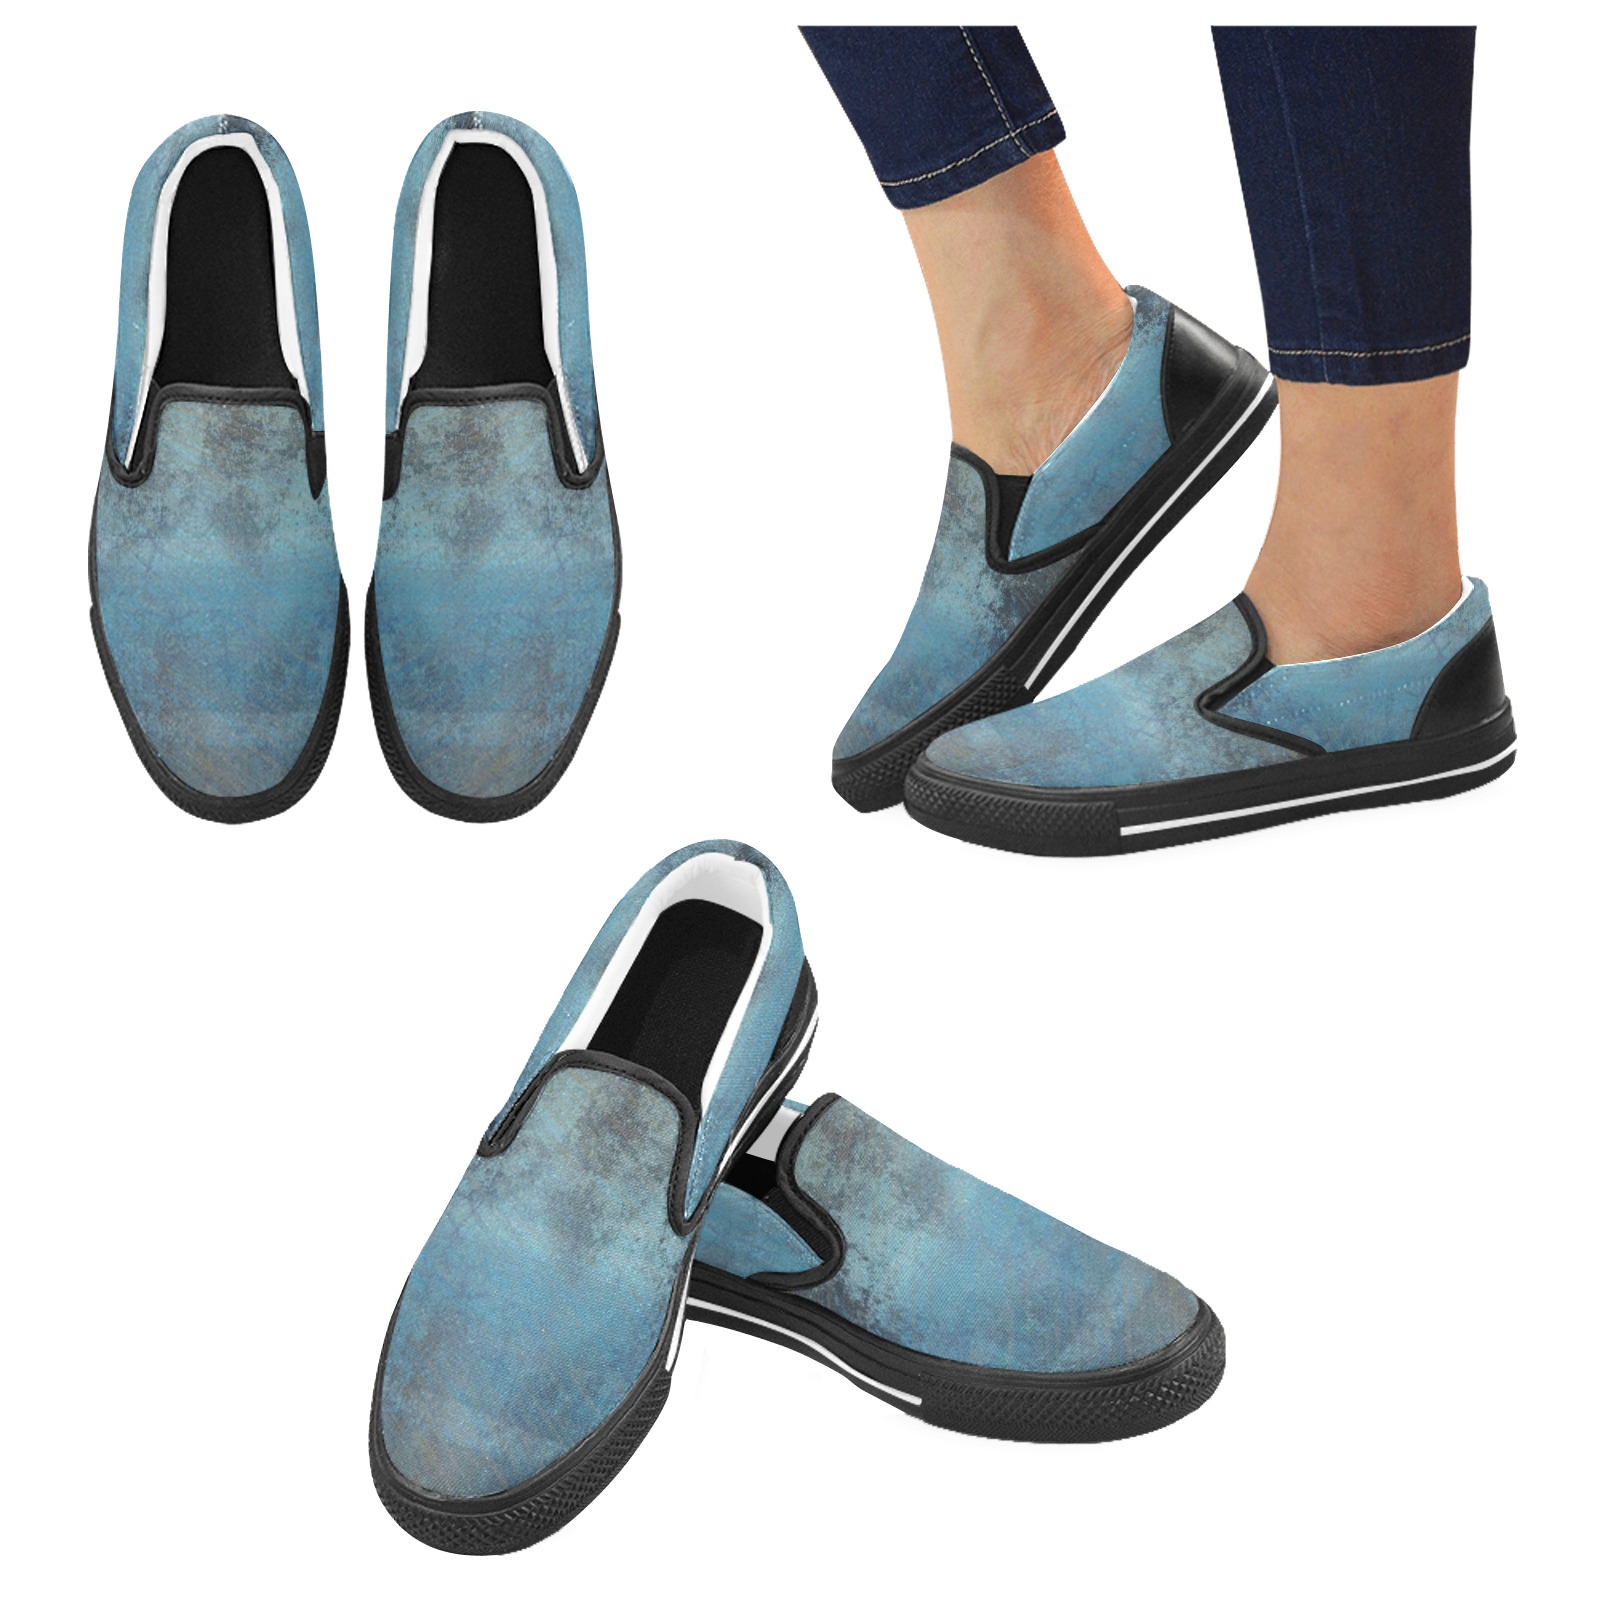 Blue Grunge Men's Slip-on Canvas Shoes (Model 019)